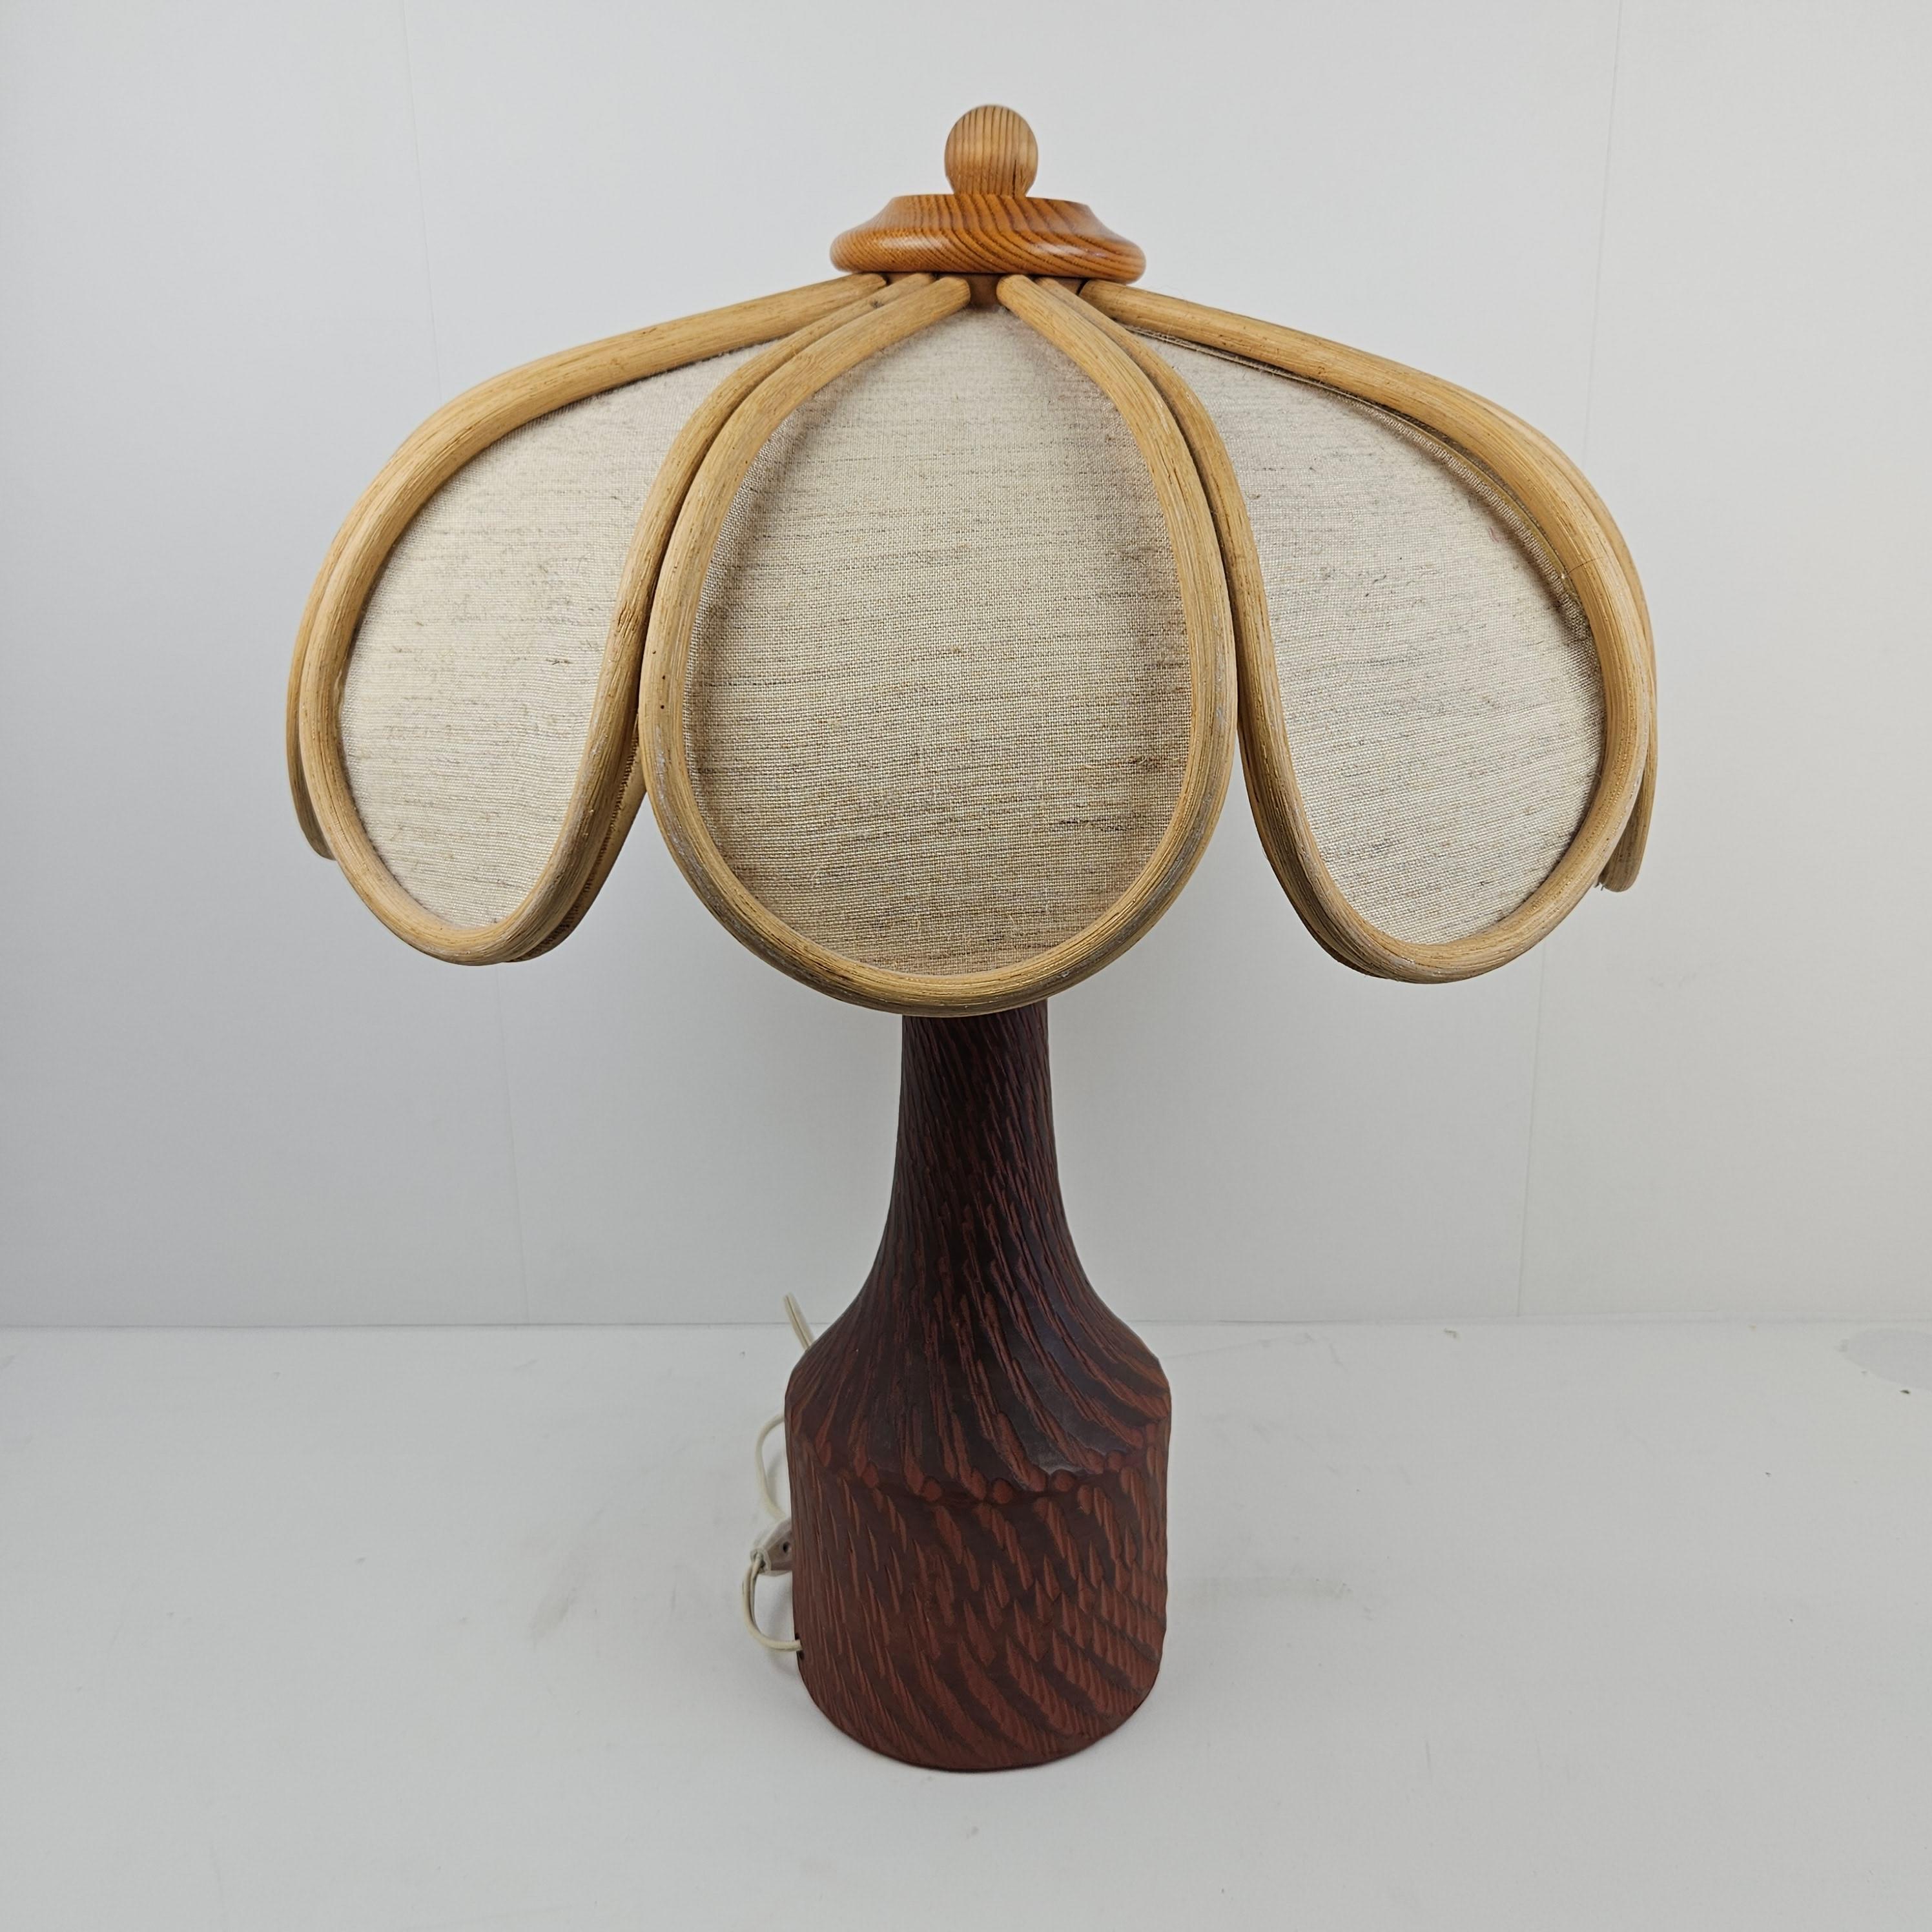 Très belle lampe de table, fabriquée aux Pays-Bas dans les années 70.

Sa forme élégante lui donne l'aspect d'un palmier.
La base est en céramique.

Quelques traces normales d'utilisation, voir les photos.